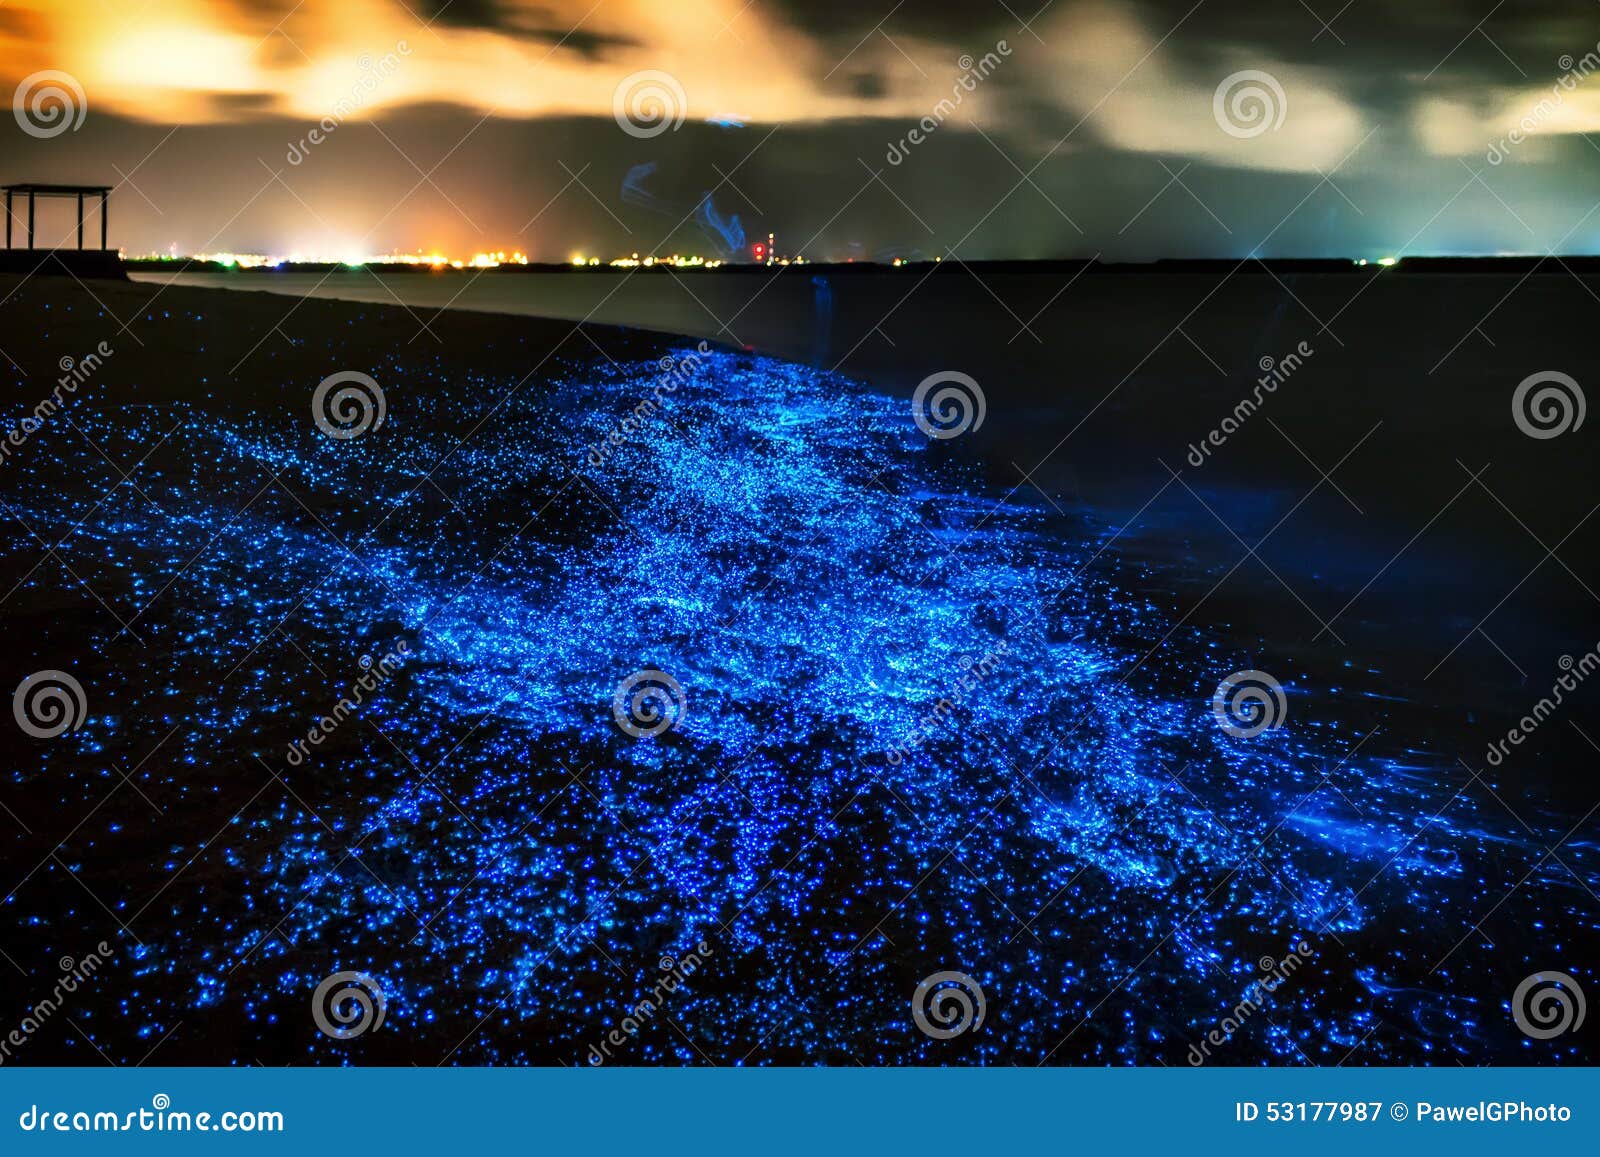 bio luminescence. illumination of plankton at maldives. many bri